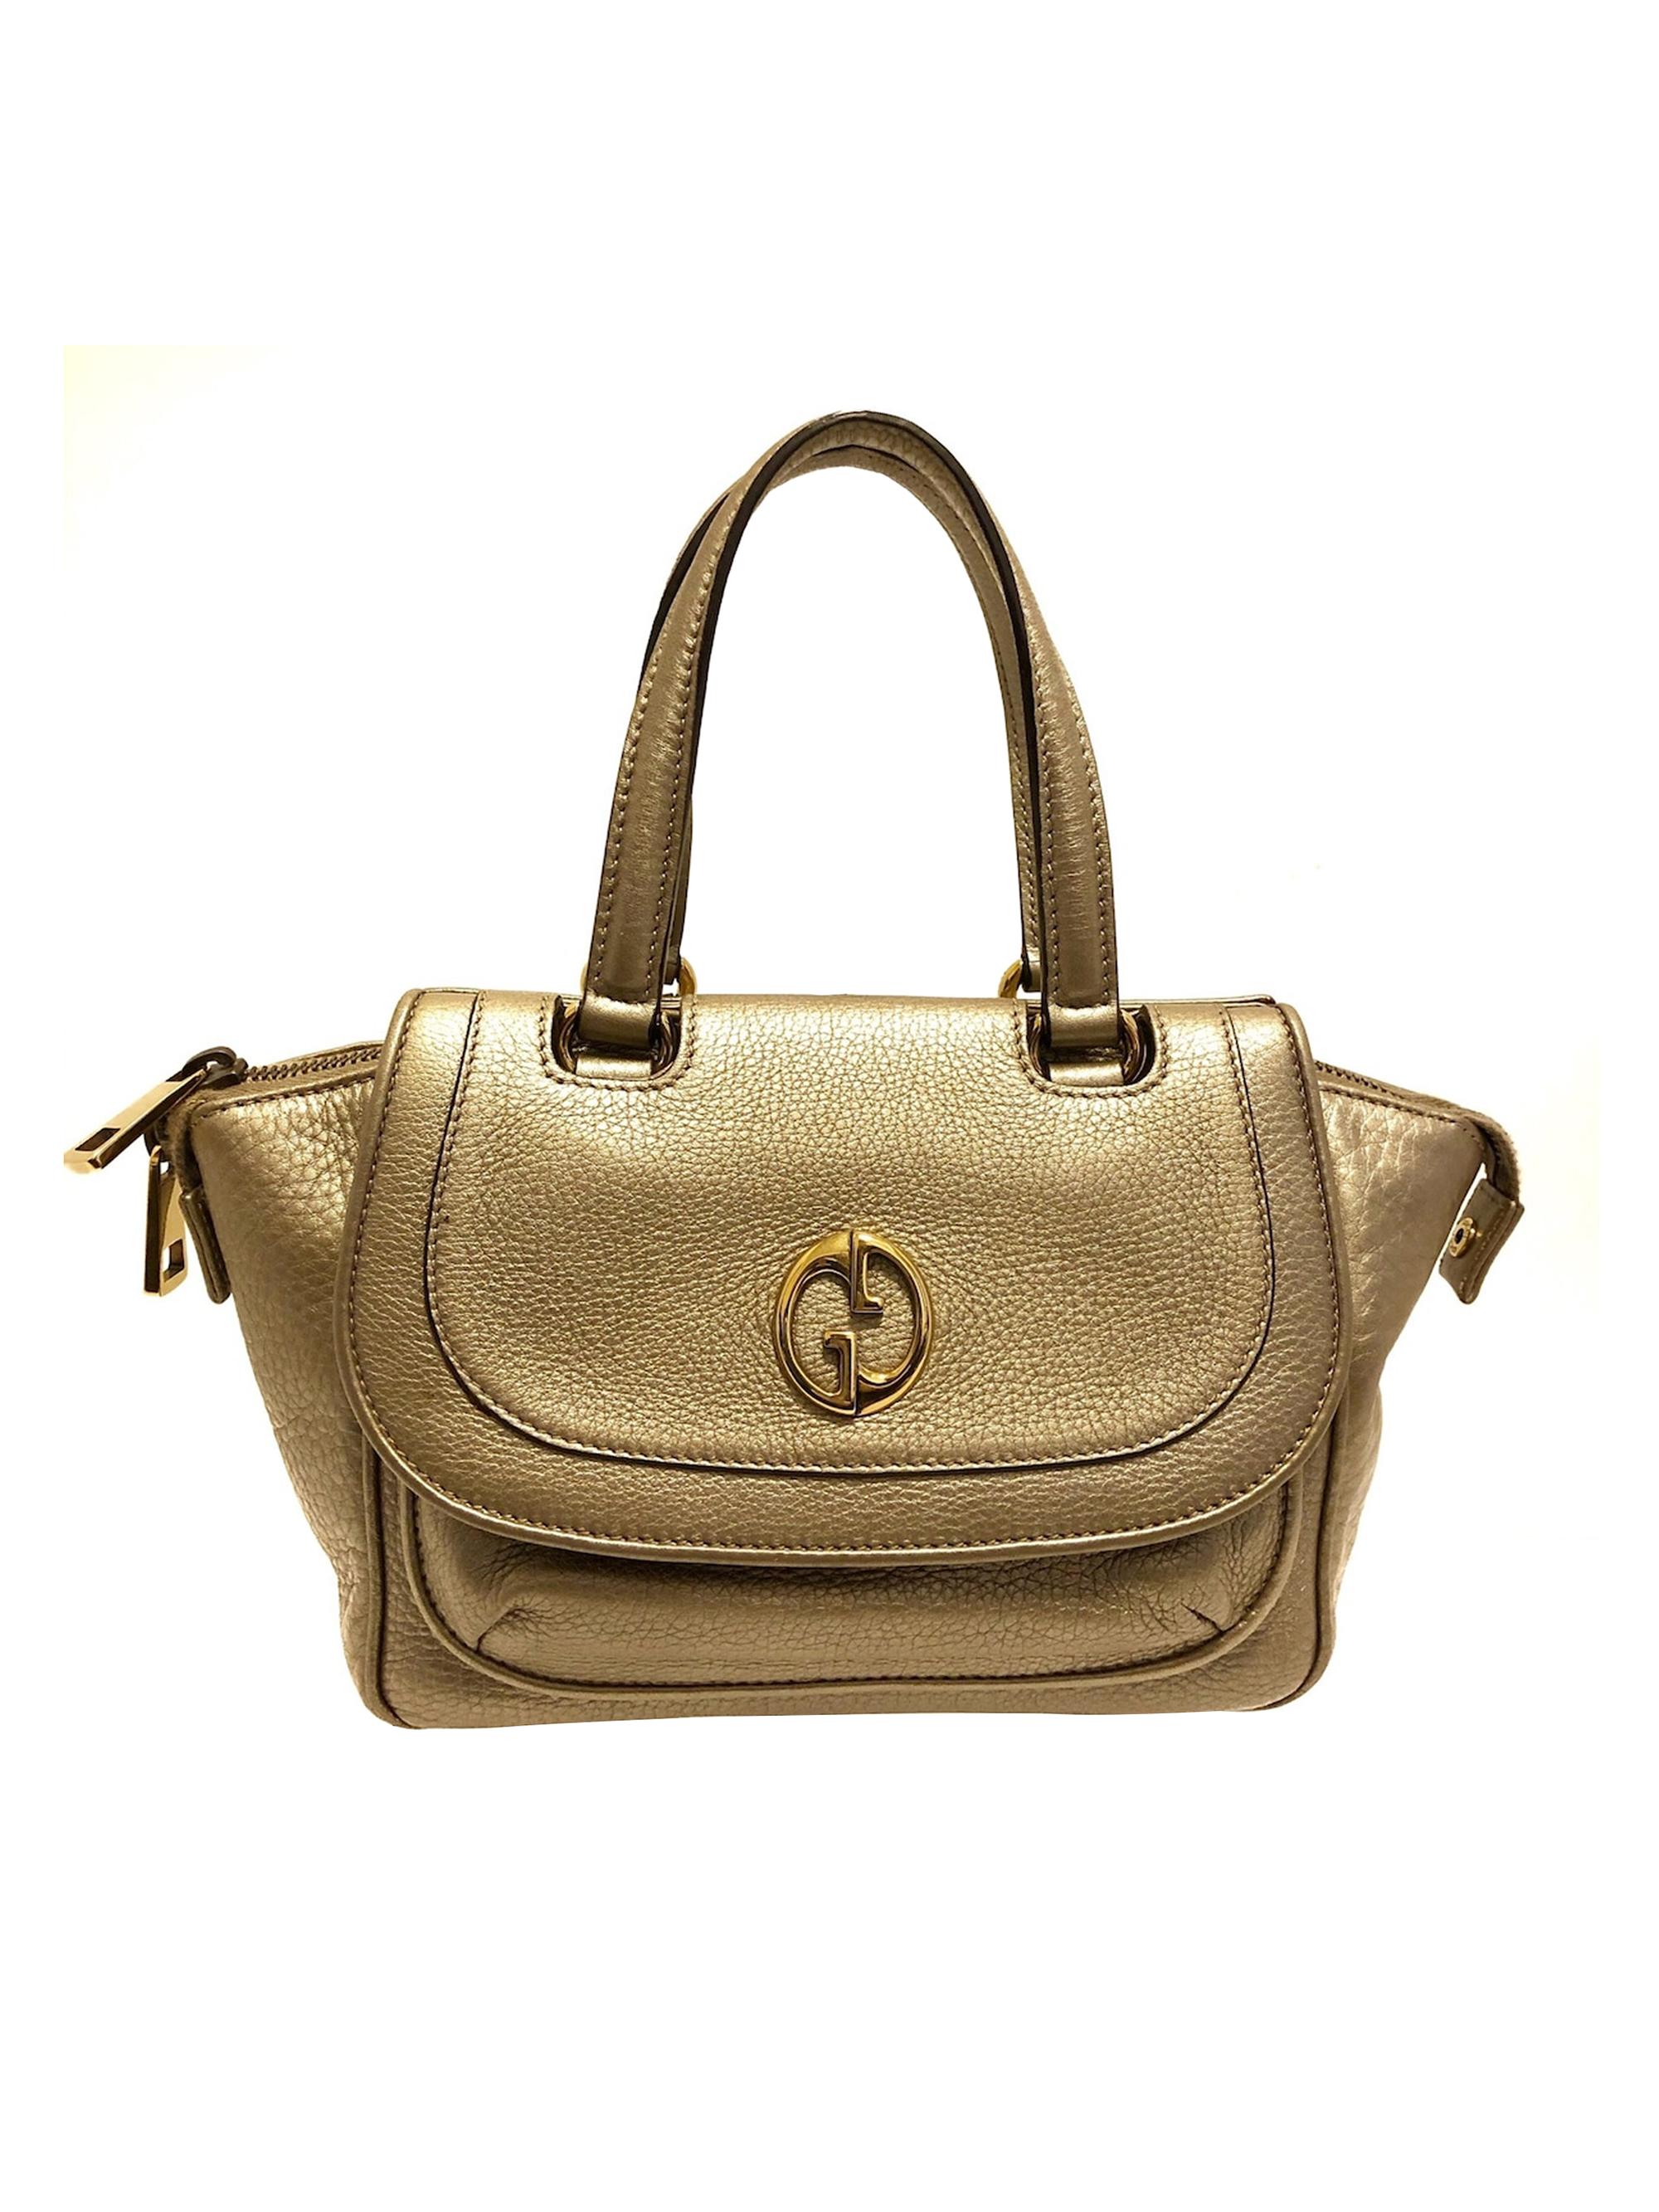 Louis Vuitton Petit Noe Epi Leather Shoulder Bag 72% off retail